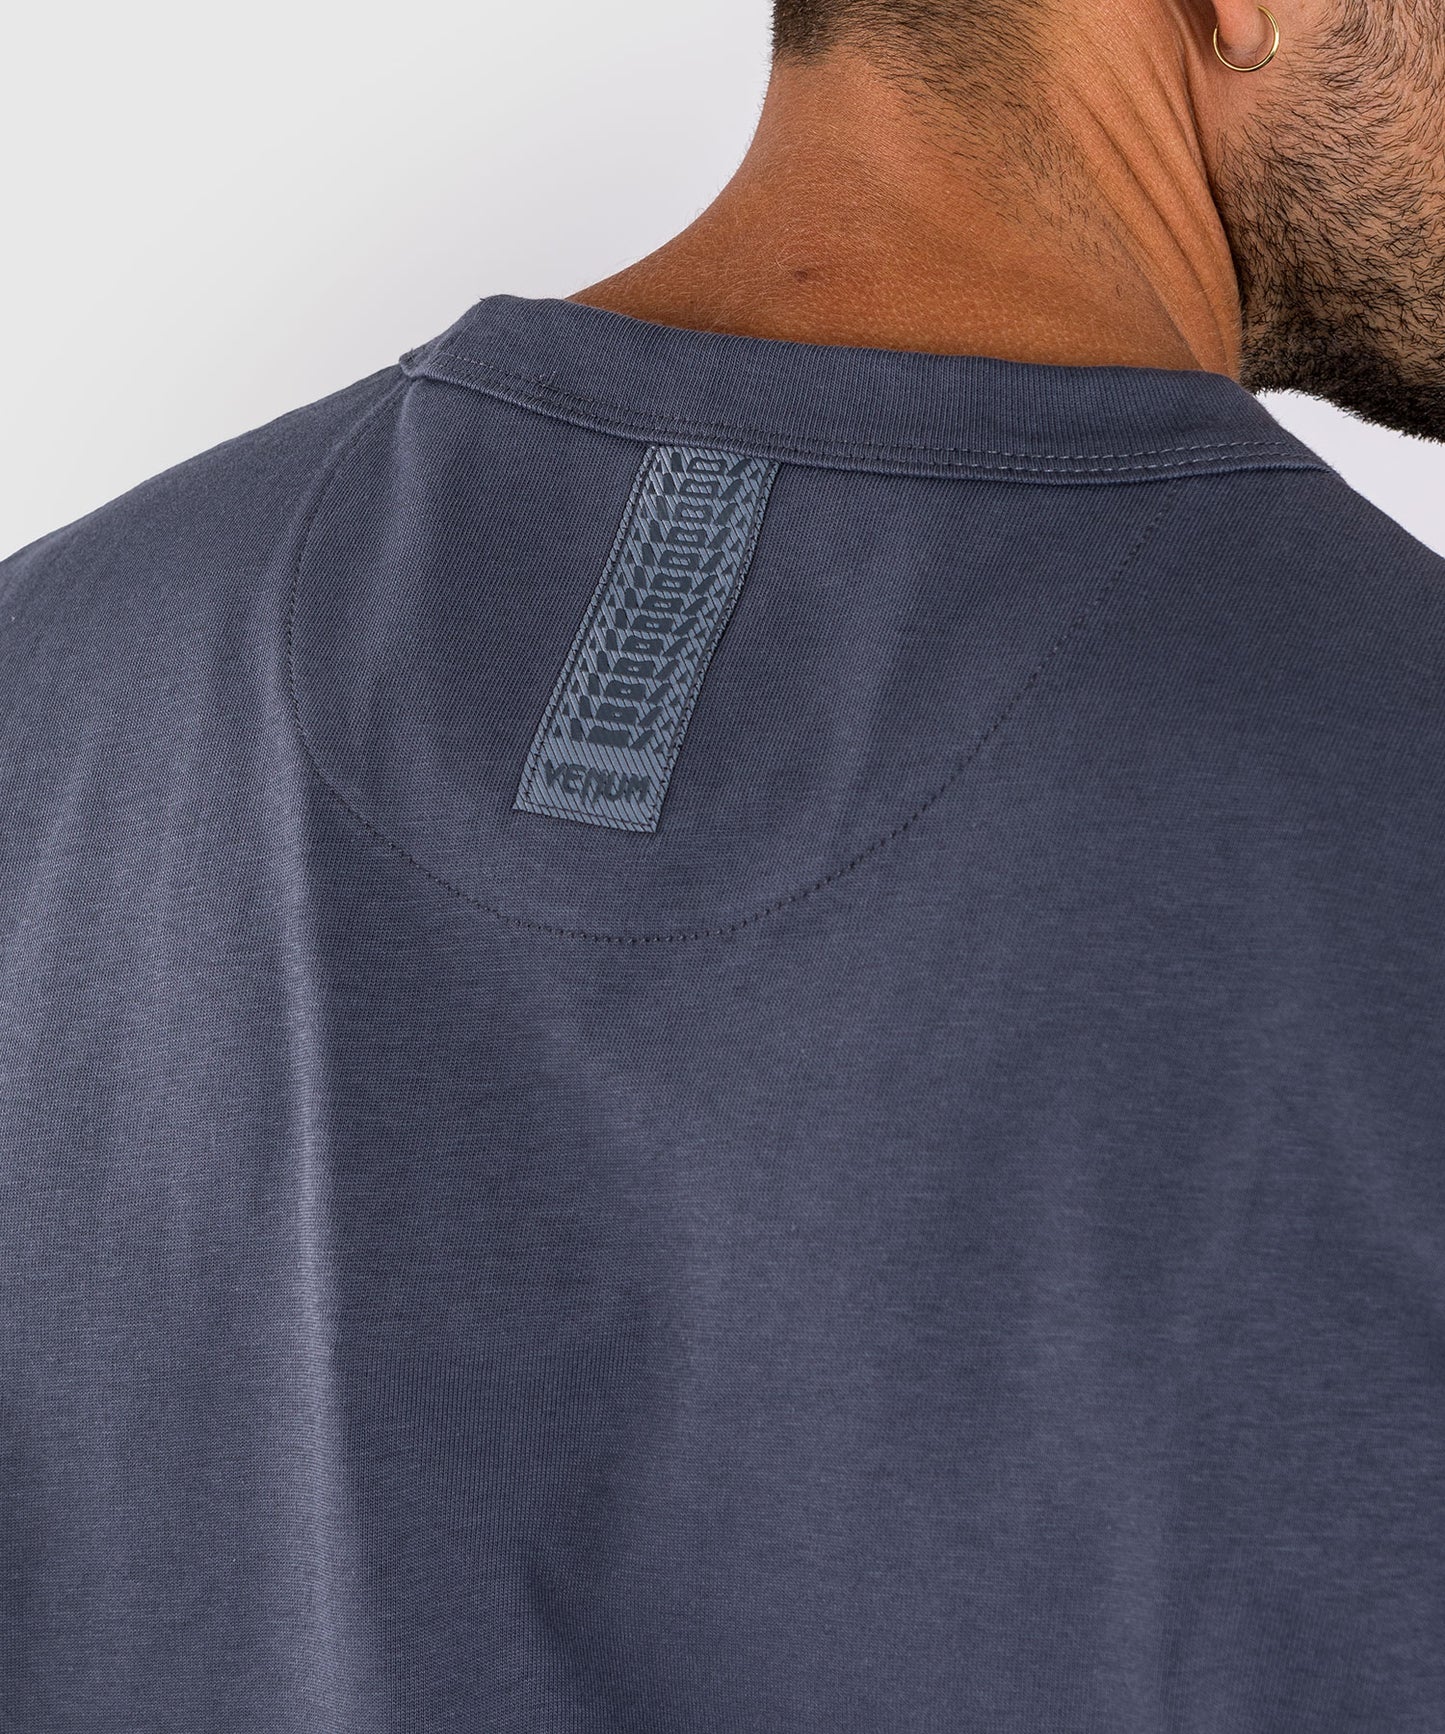 Venum Silent Power T-Shirt - Marineblau